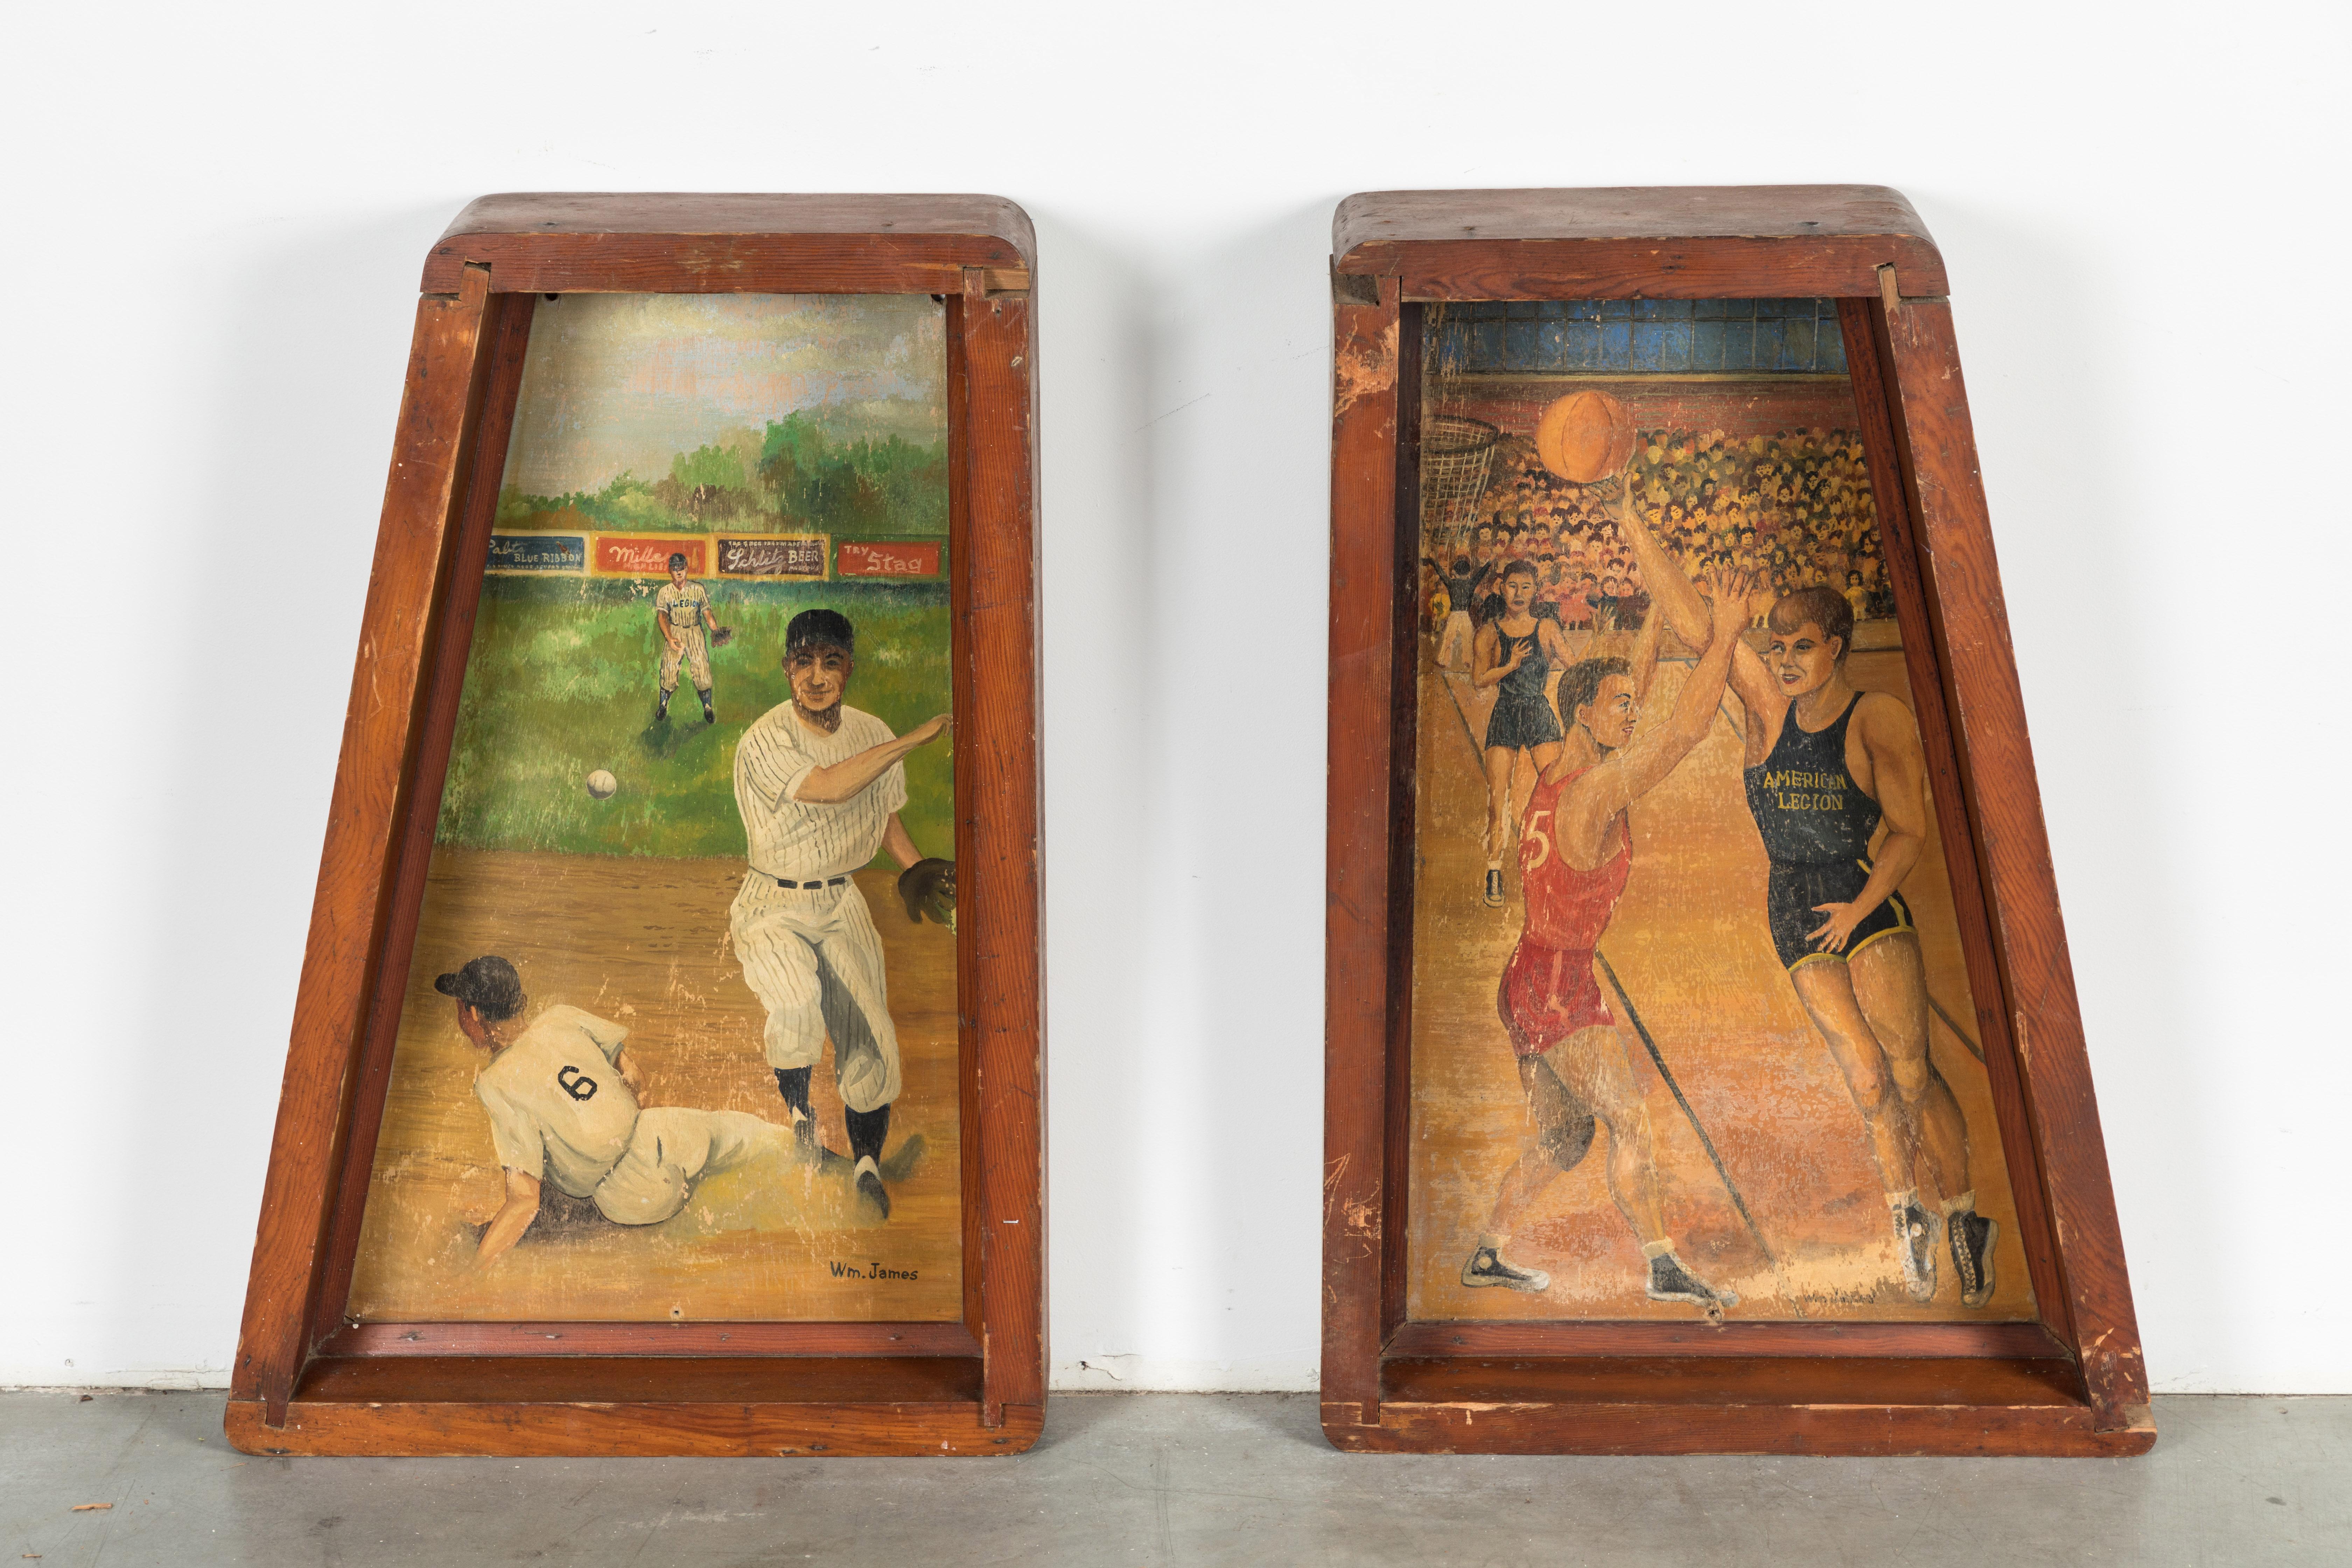 Ein Paar Baseball- und Basketball-Gemälde, gefunden in einer Halle der American Legion im Mittleren Westen. Diese wurden stolz hinter der Bar der Legionshalle ausgestellt. Großartige sportbezogene Themen. Das Baseballbild zeigt im Hintergrund